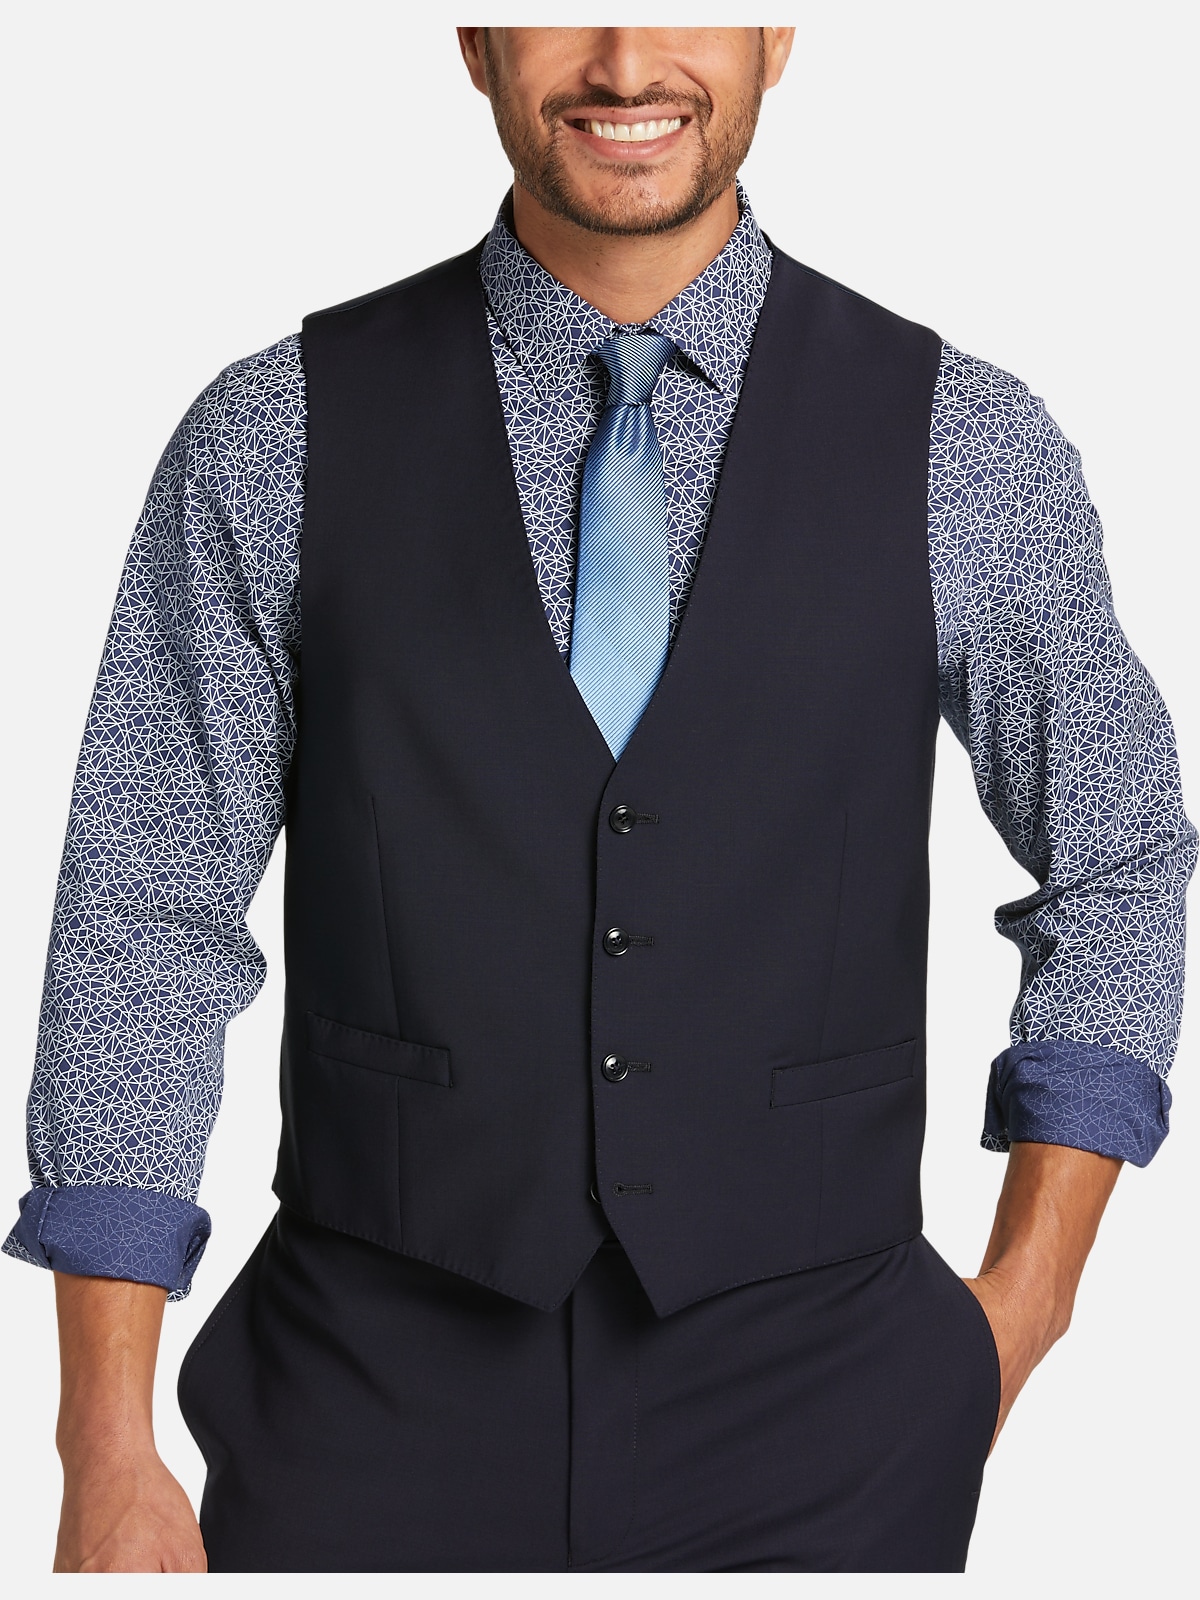 Calvin Klein Suit Vest Mens Top Sellers | bellvalefarms.com